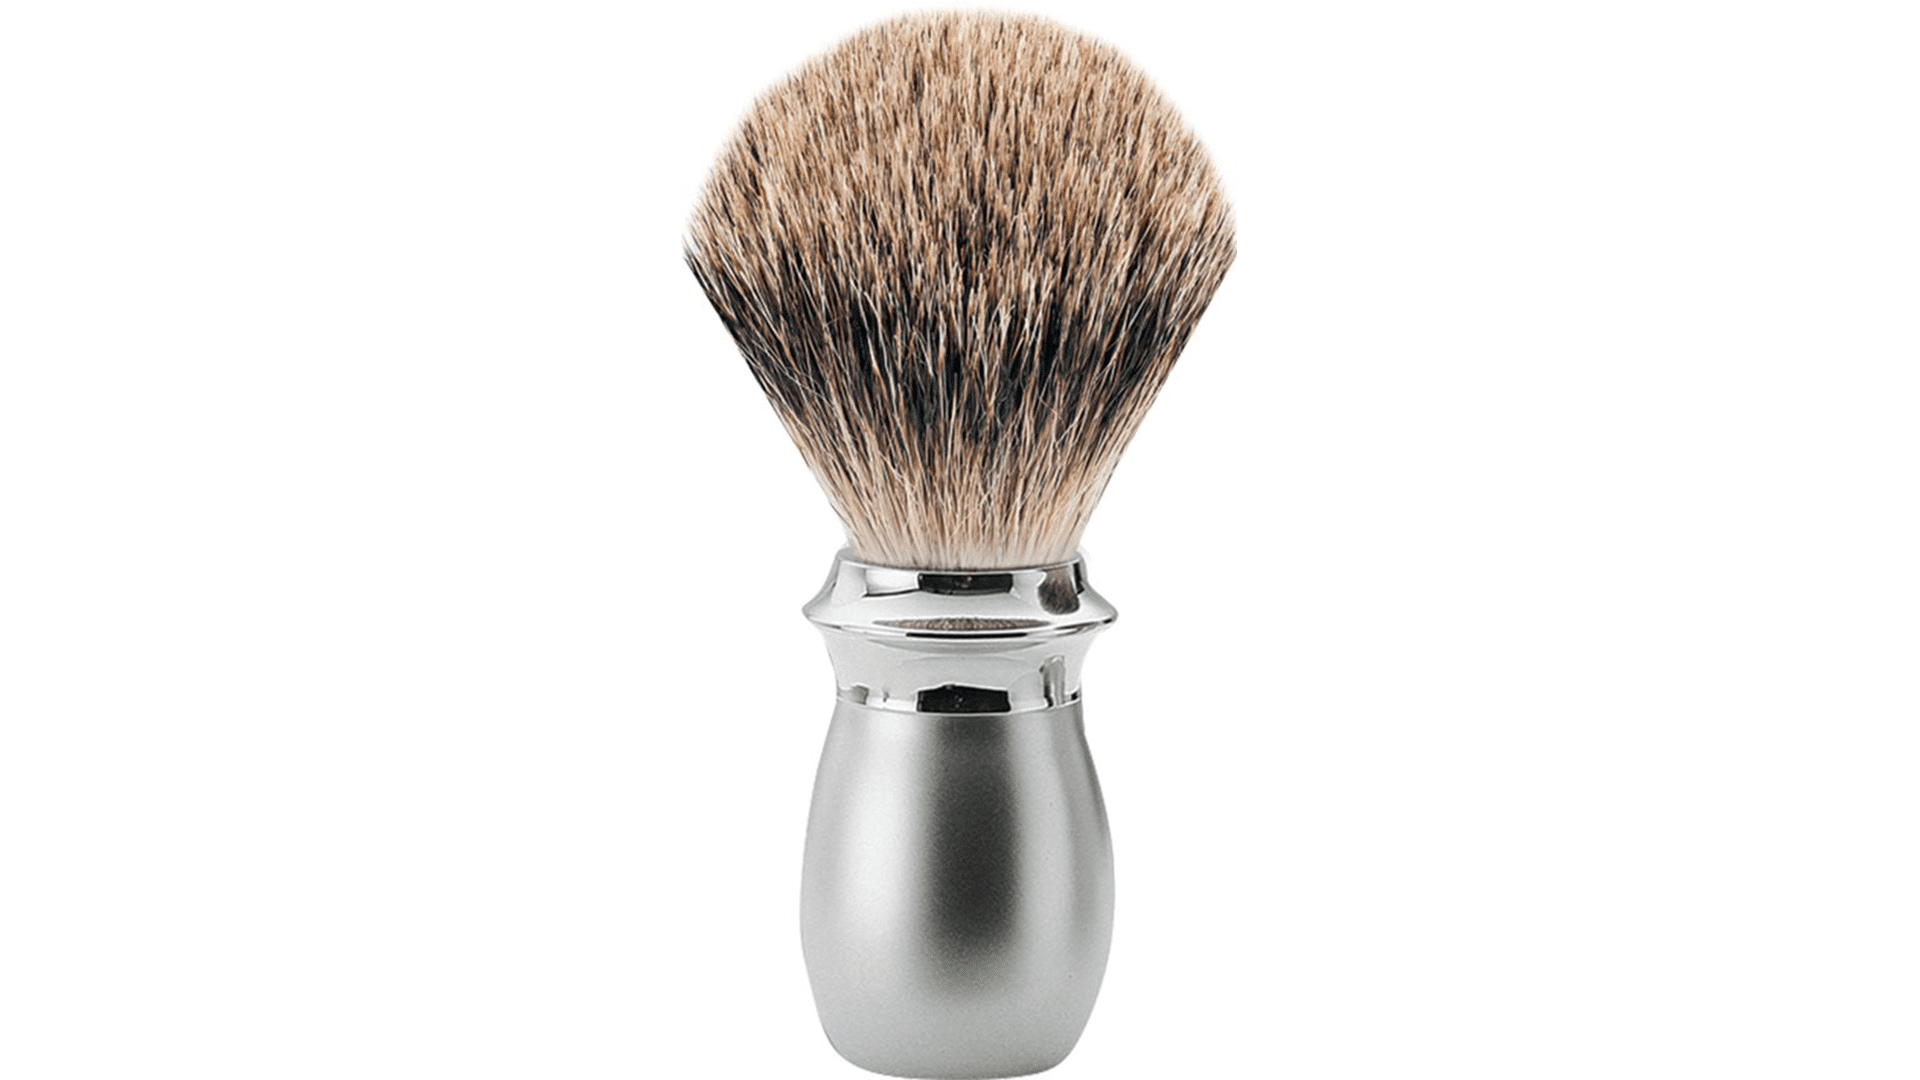 erbe-shaving-brush-badger-hair-metal-matt-refined-size-m-from-solingen